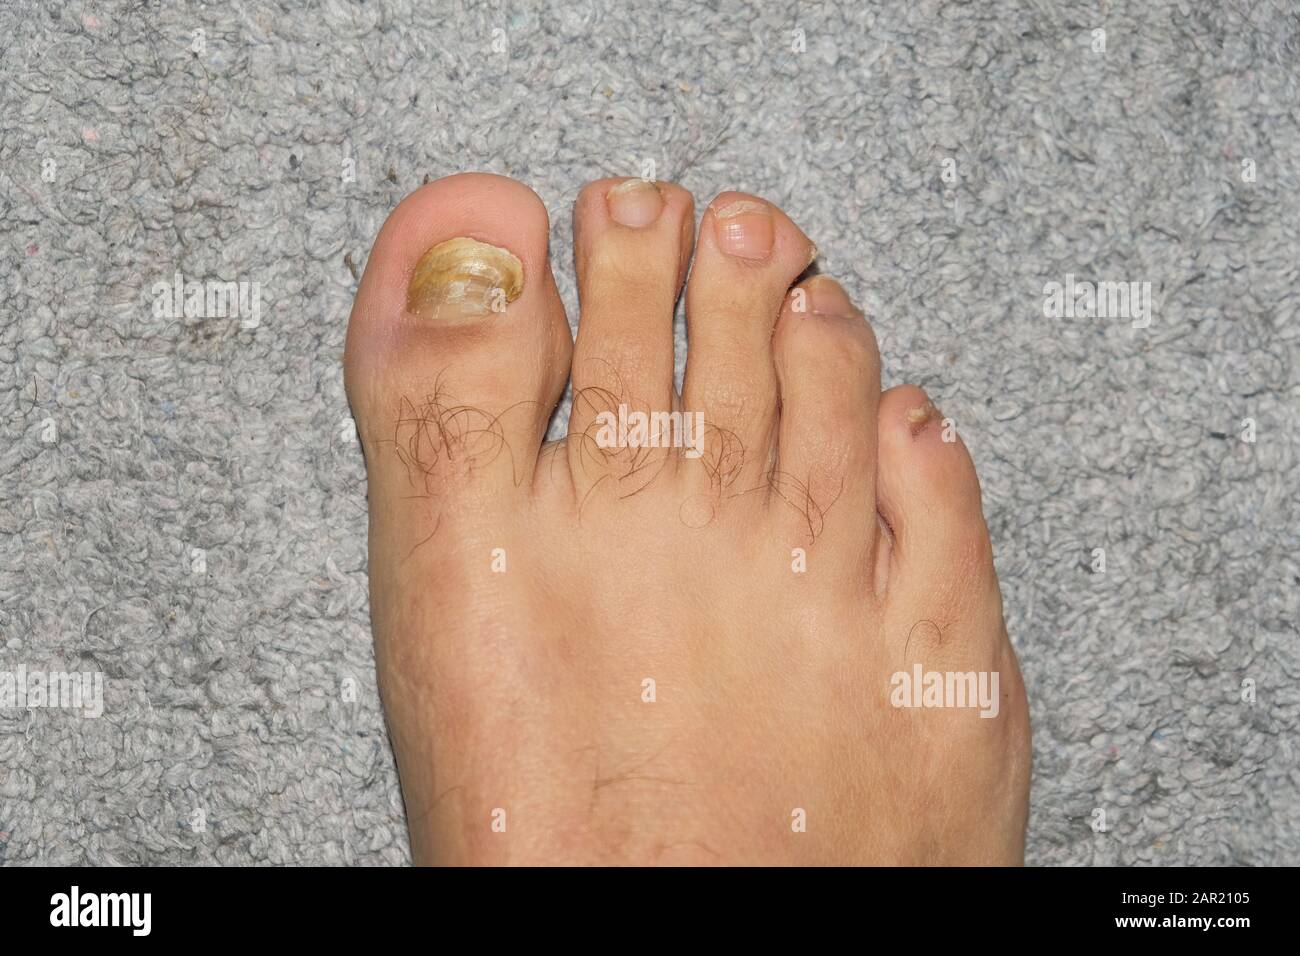 Hombre joven descalzo dedos con micosis onycho uñas enfermos, dermatológicos problemas Foto de stock